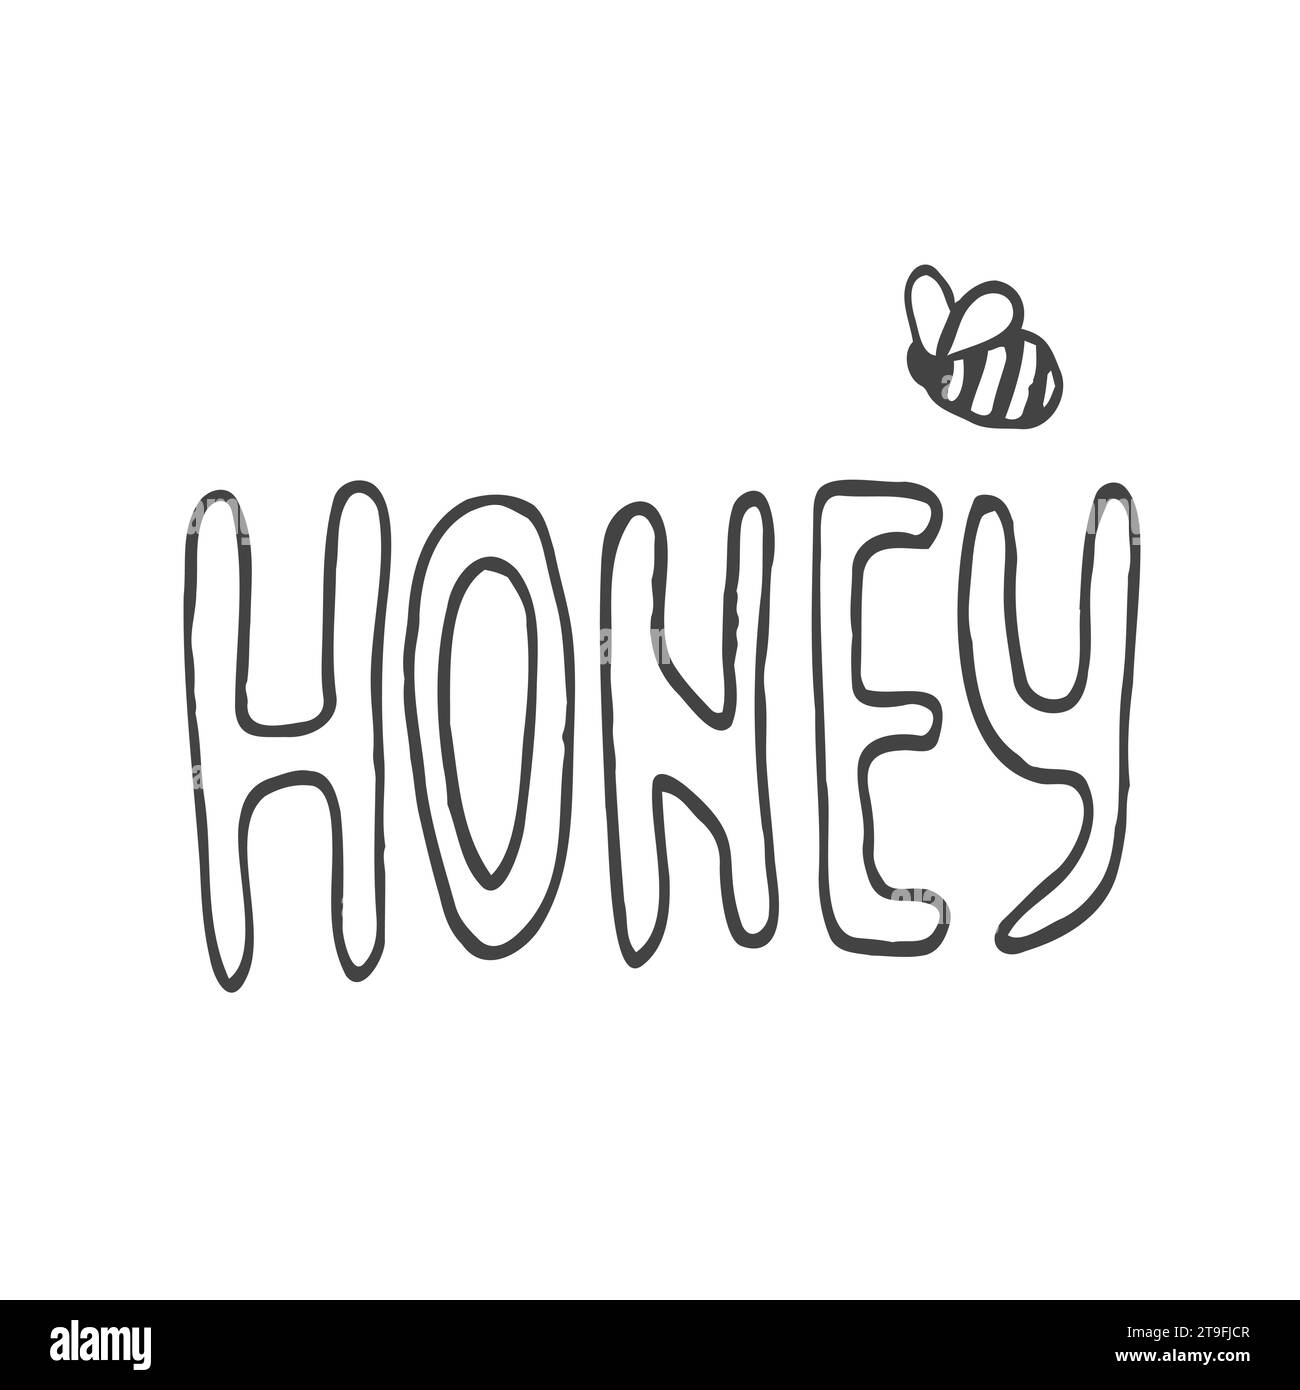 Honigbuchstaben umgeben von Bienen und Kritzelblüten. Vektorstilisierter Hintergrund auf weißem Hintergrund Stock Vektor